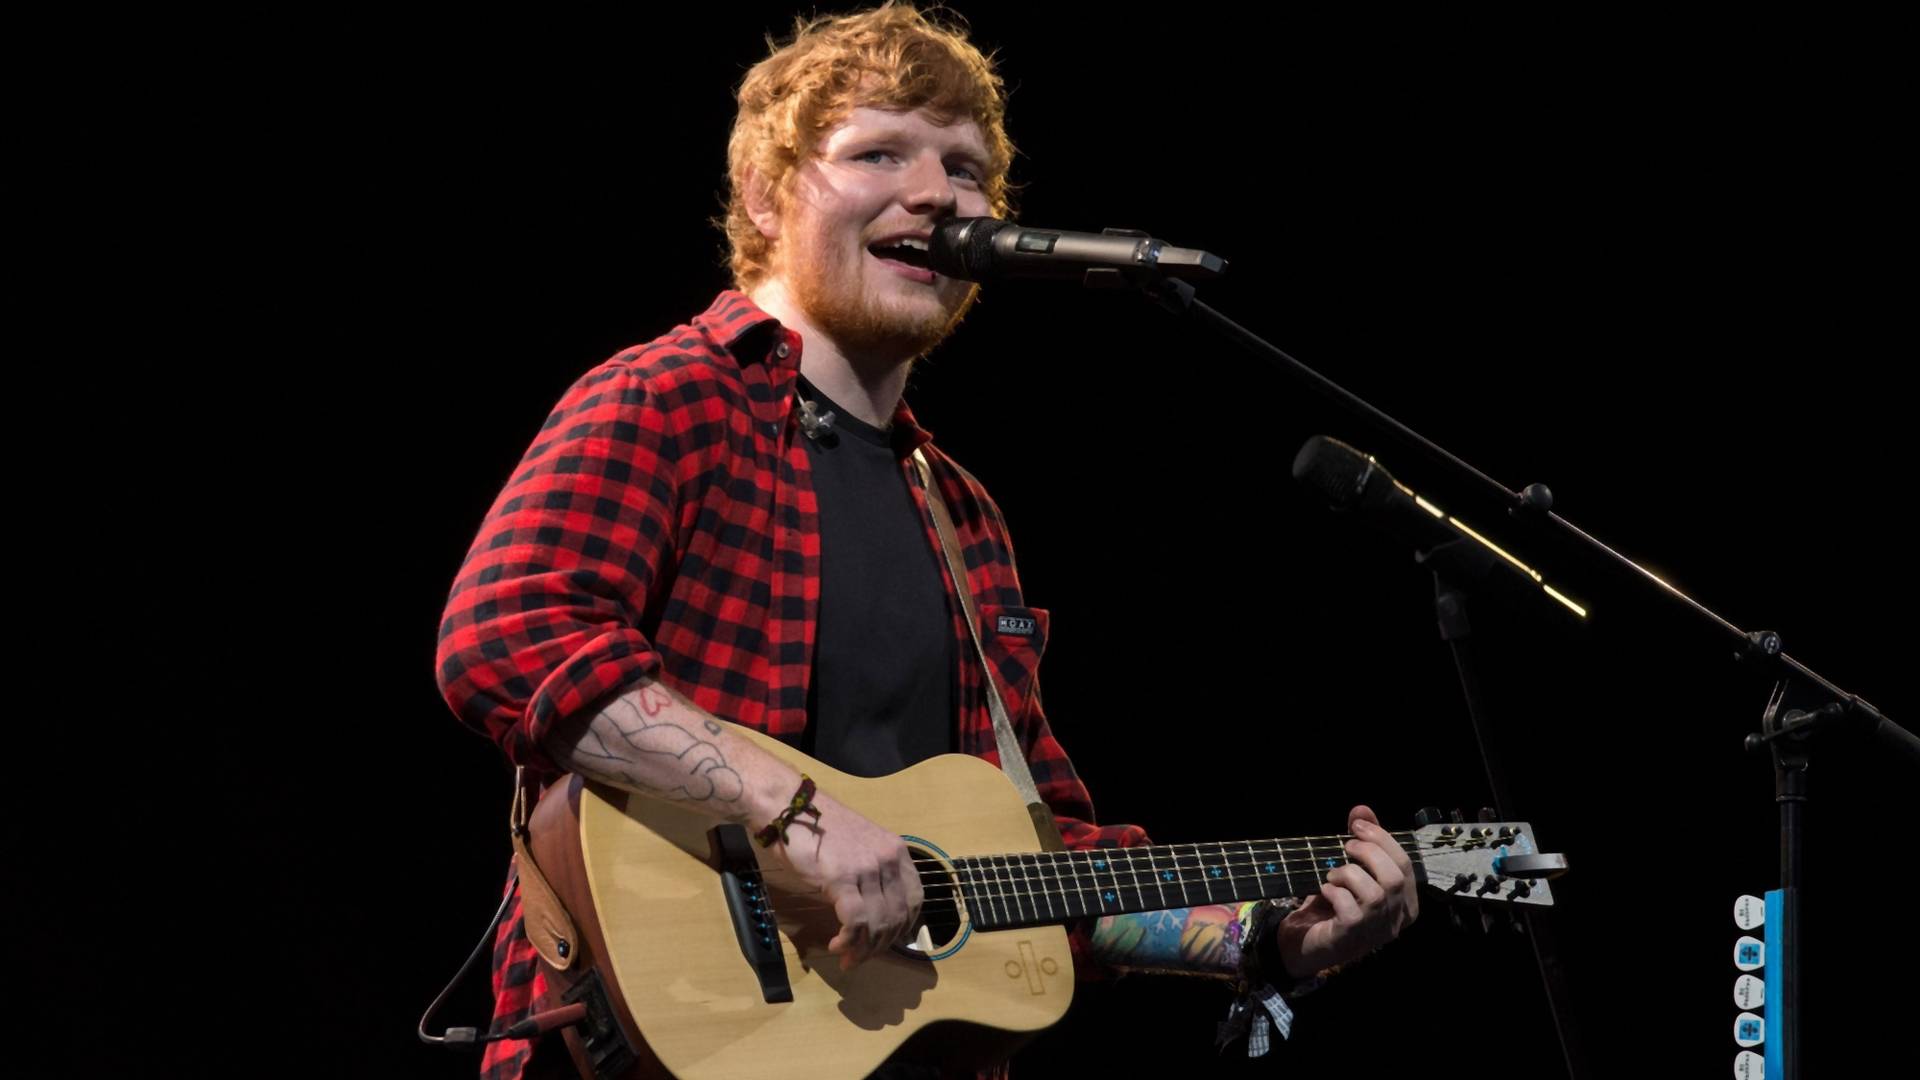 Nius dnia: Ed Sheeran zagra koncert w Polsce! Wiemy, kiedy kupisz bilet